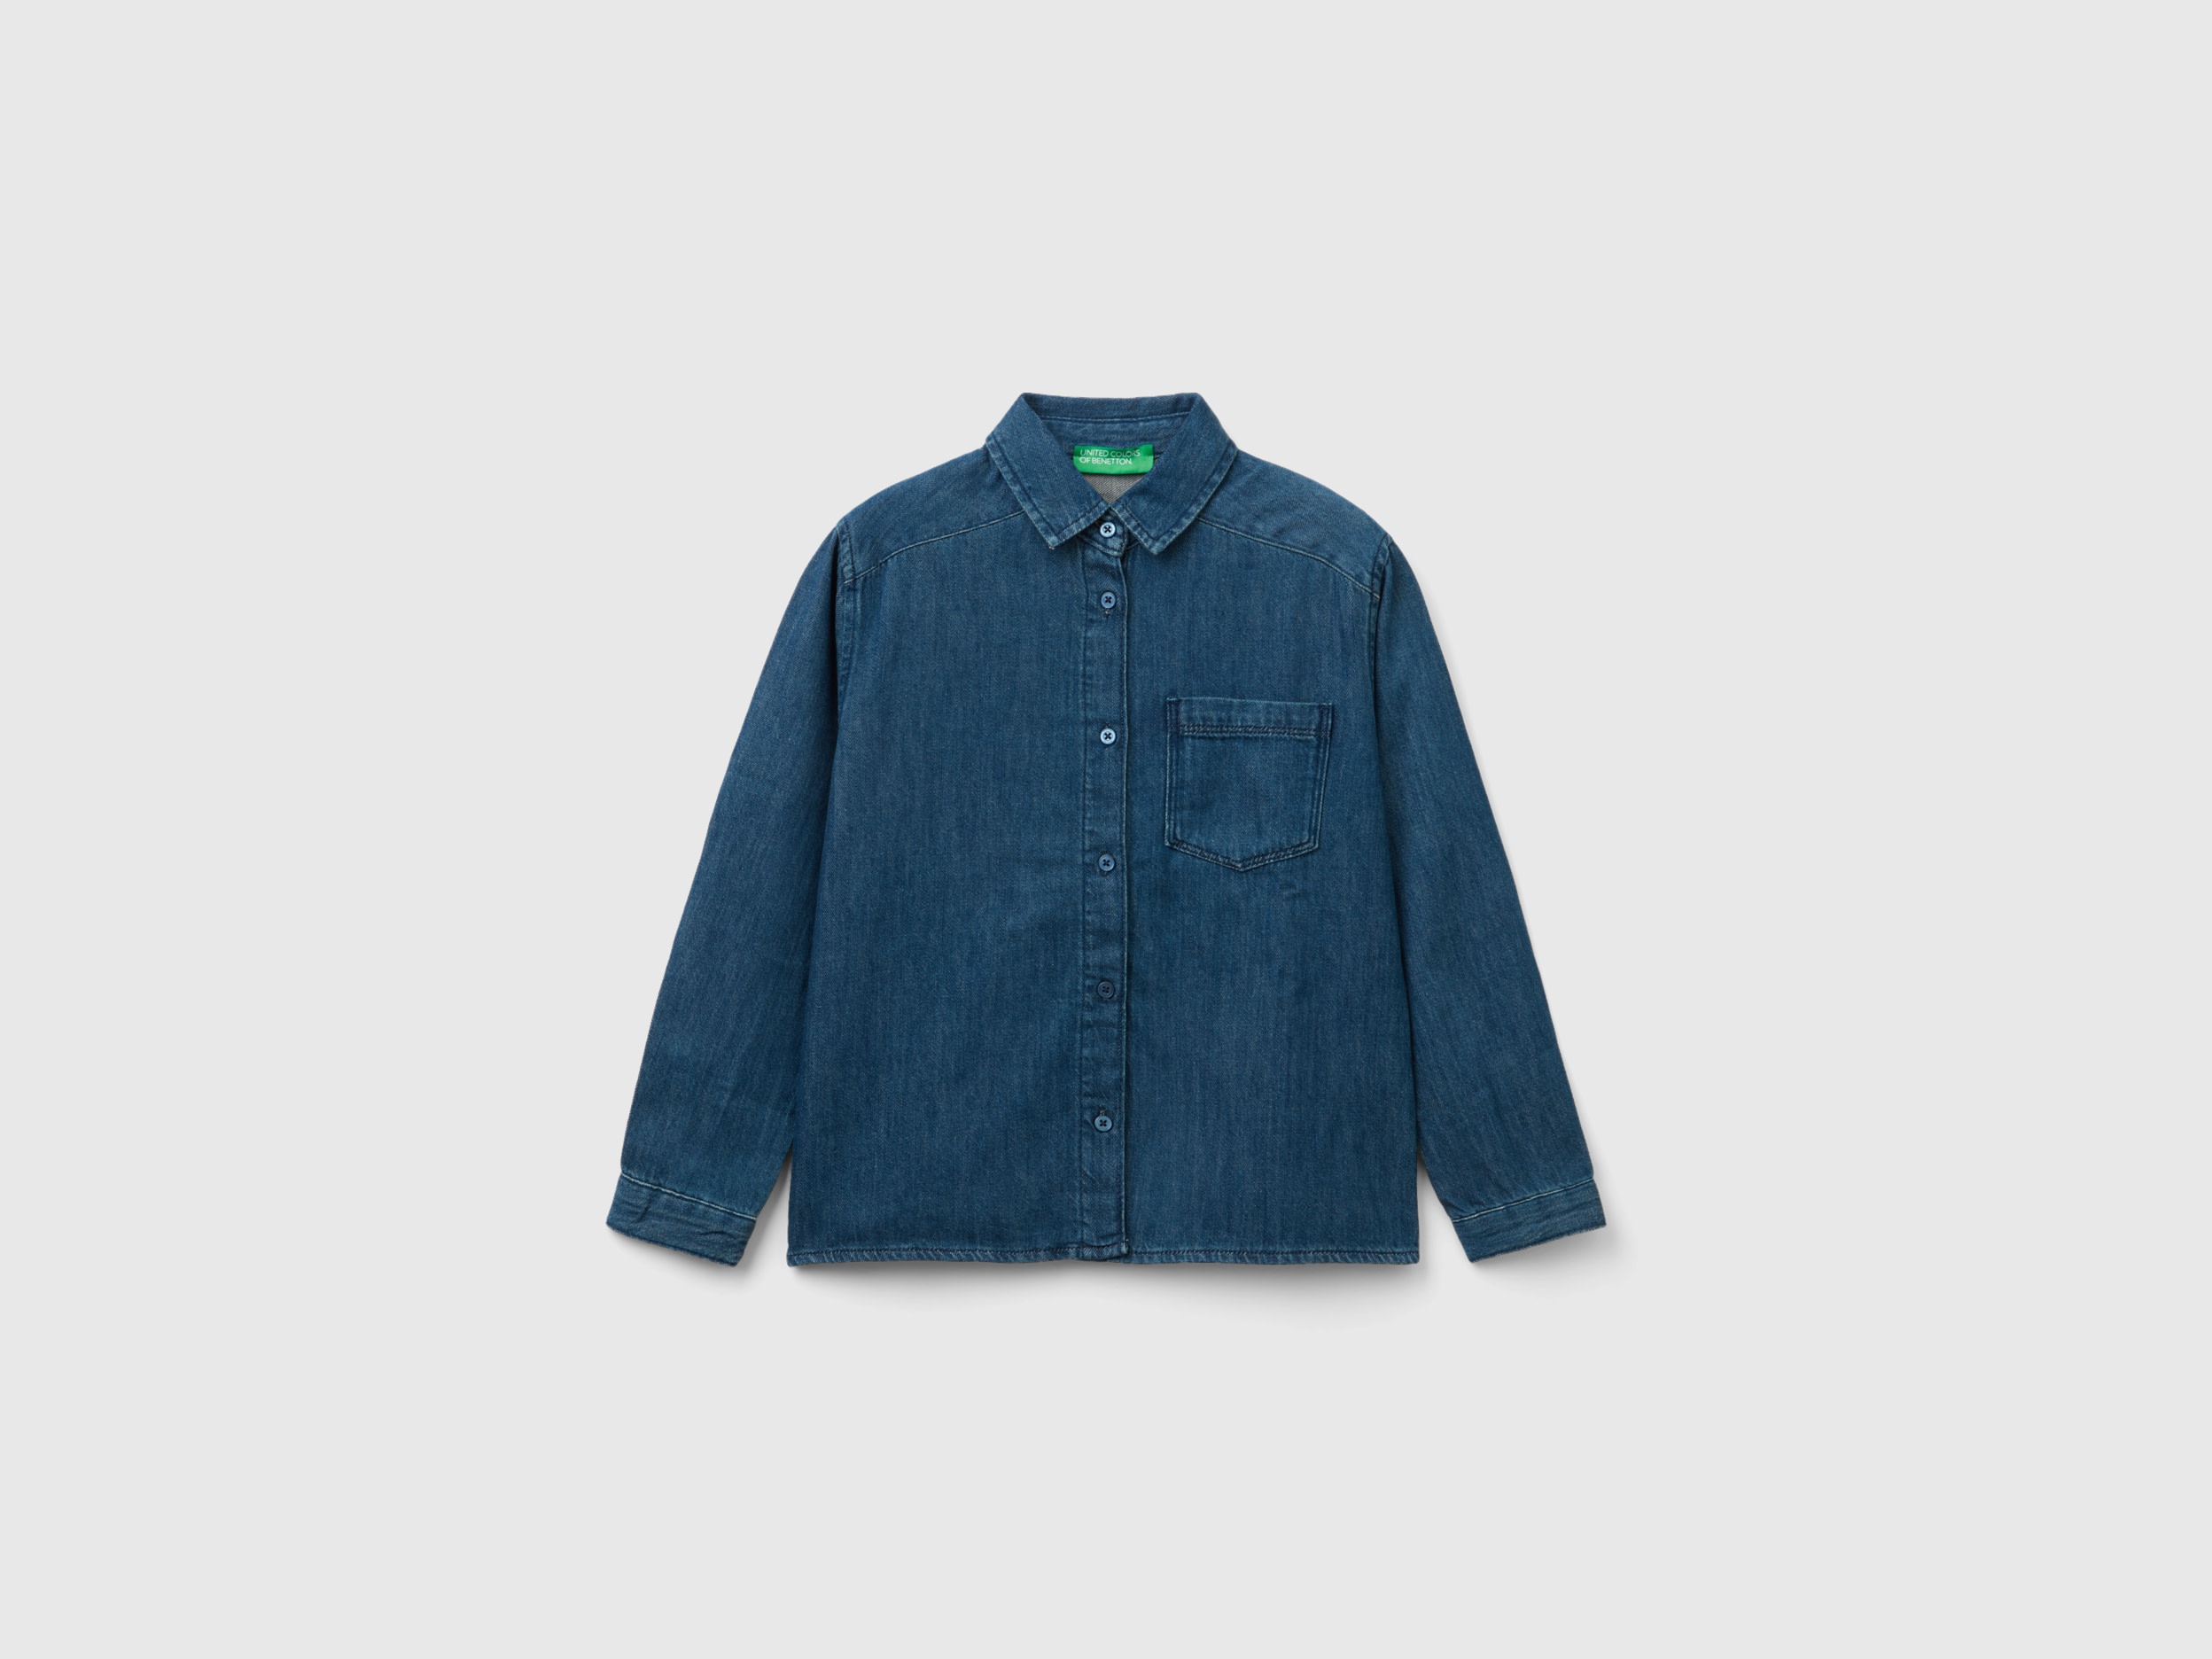 Benetton, Lightweight Denim Shirt, size M, Blue, Kids